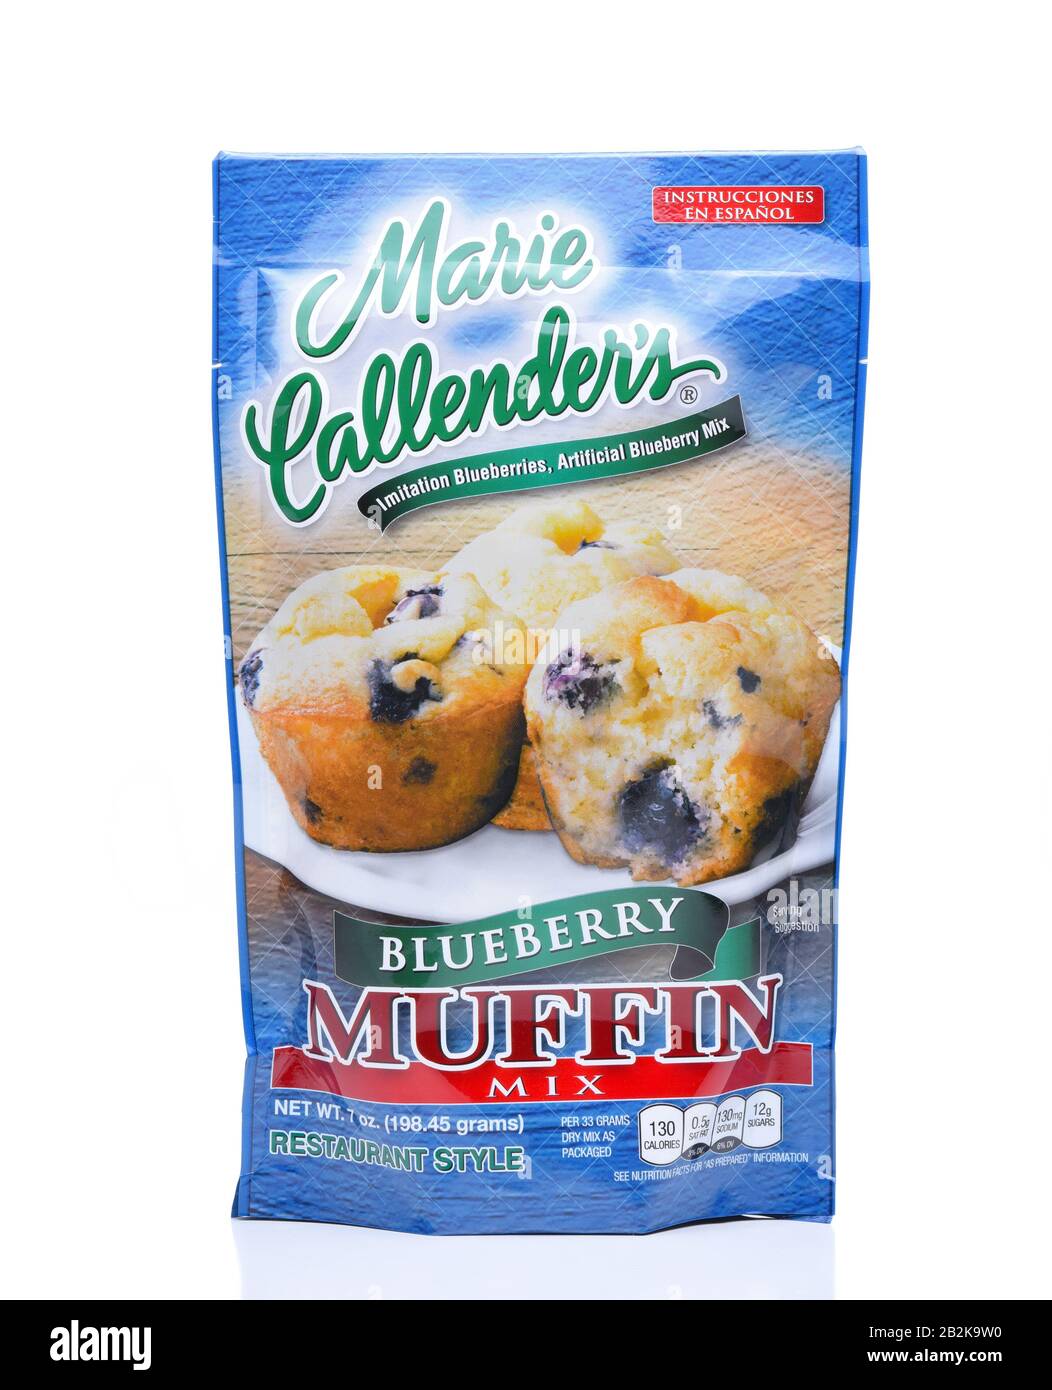 Irvine, KALIFORNIEN - DEC 4, 2018: Marie Callenders Blueberry Muffin Mix. Das Paket enthält die meisten Zutaten, die für die Herstellung des Gebäcks benötigt werden. Stockfoto